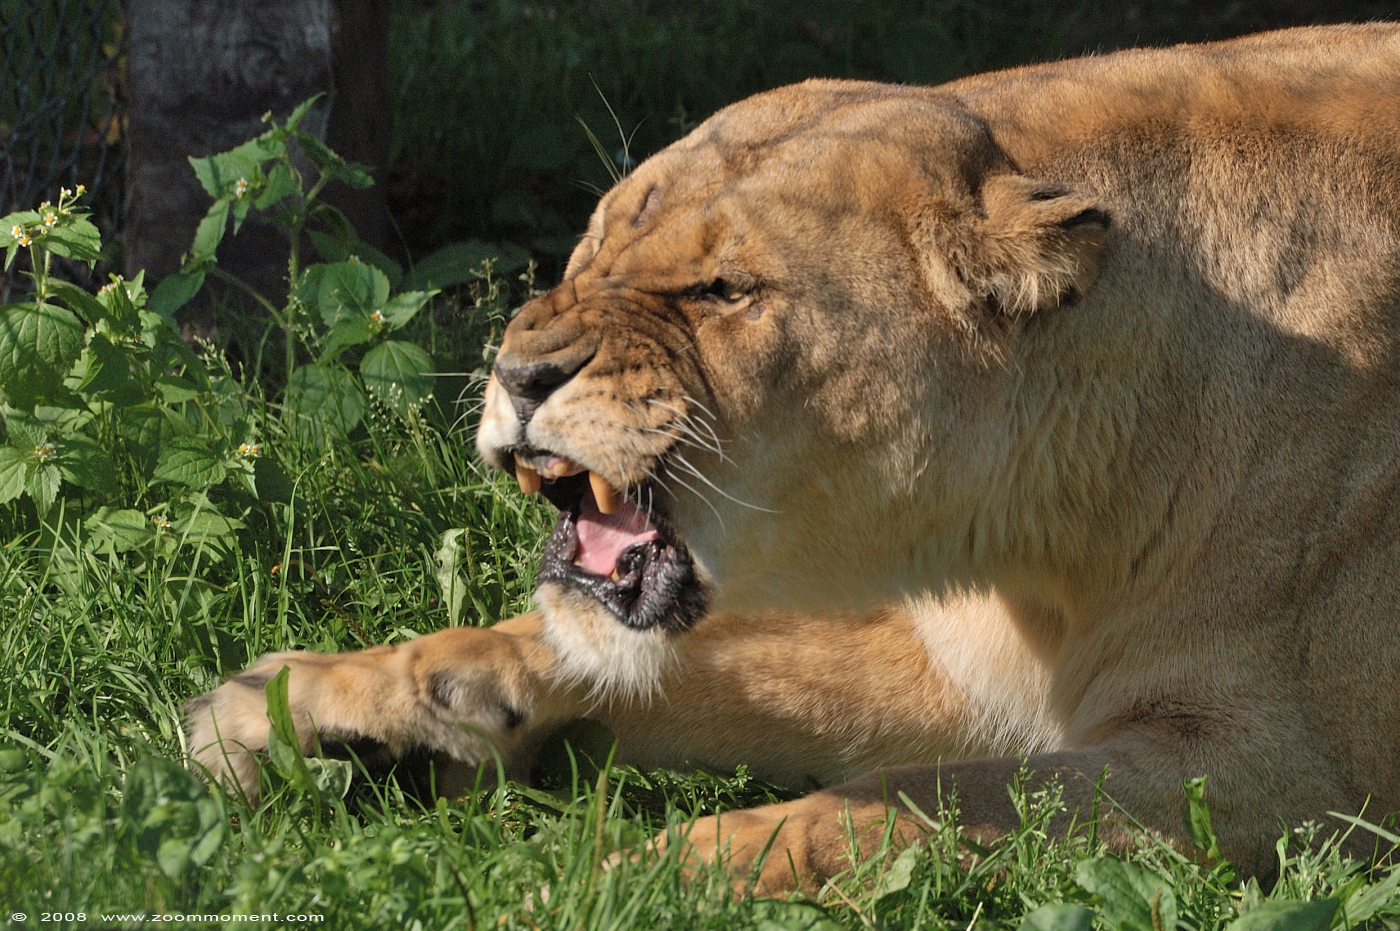 Afrikaanse leeuwin  ( Panthera leo )   African lioness
Trefwoorden: Olmen zoo Belgium African lion Afrikaanse leeuw Panthera leo